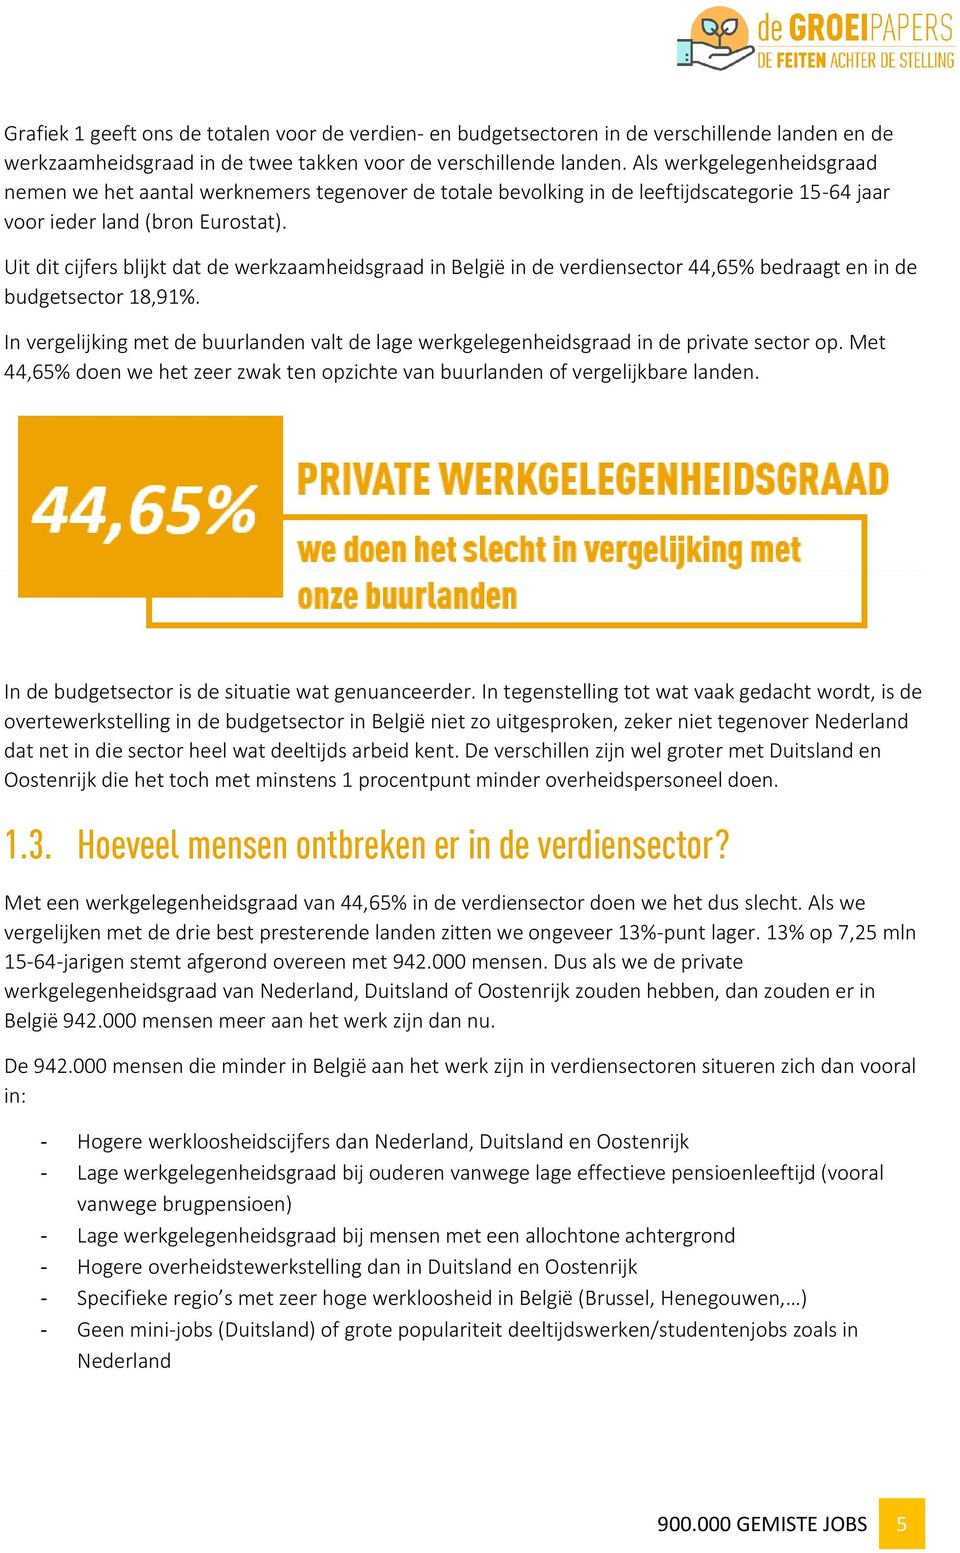 Uit dit cijfers blijkt dat de werkzaamheidsgraad in België in de verdiensector 44,65% bedraagt en in de budgetsector 18,91%.